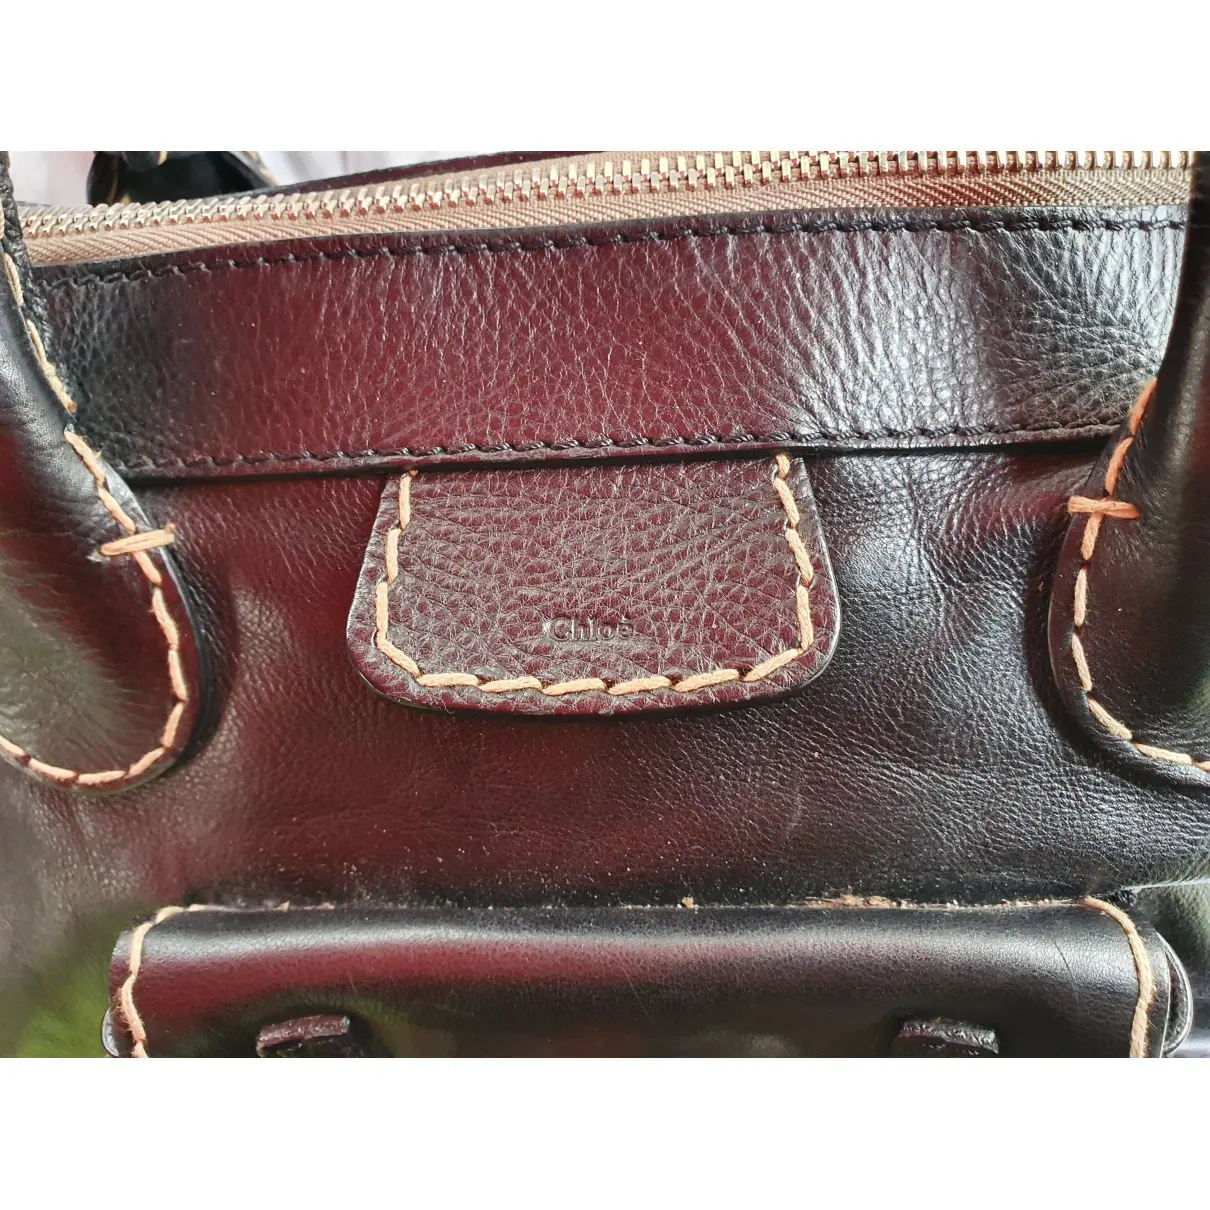 Edith leather handbag Chloé